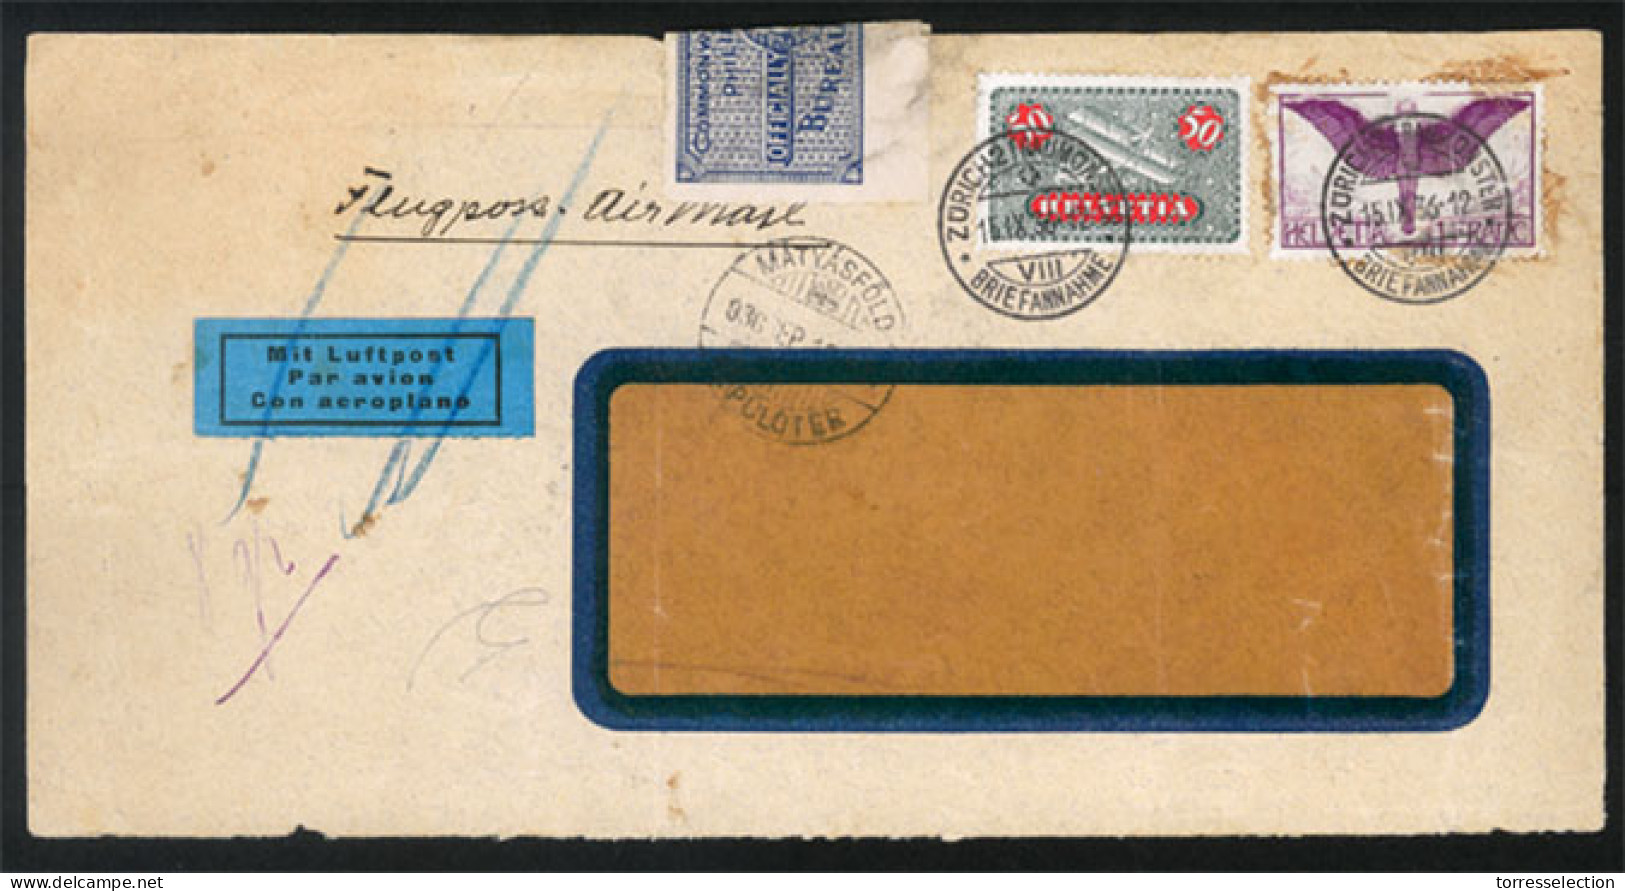 PHILIPPINES. 1936. Zurich/Switzerland. Officially Sealed Usage. Airmail. Extr.rare Usage! X-Fine. - Filippine